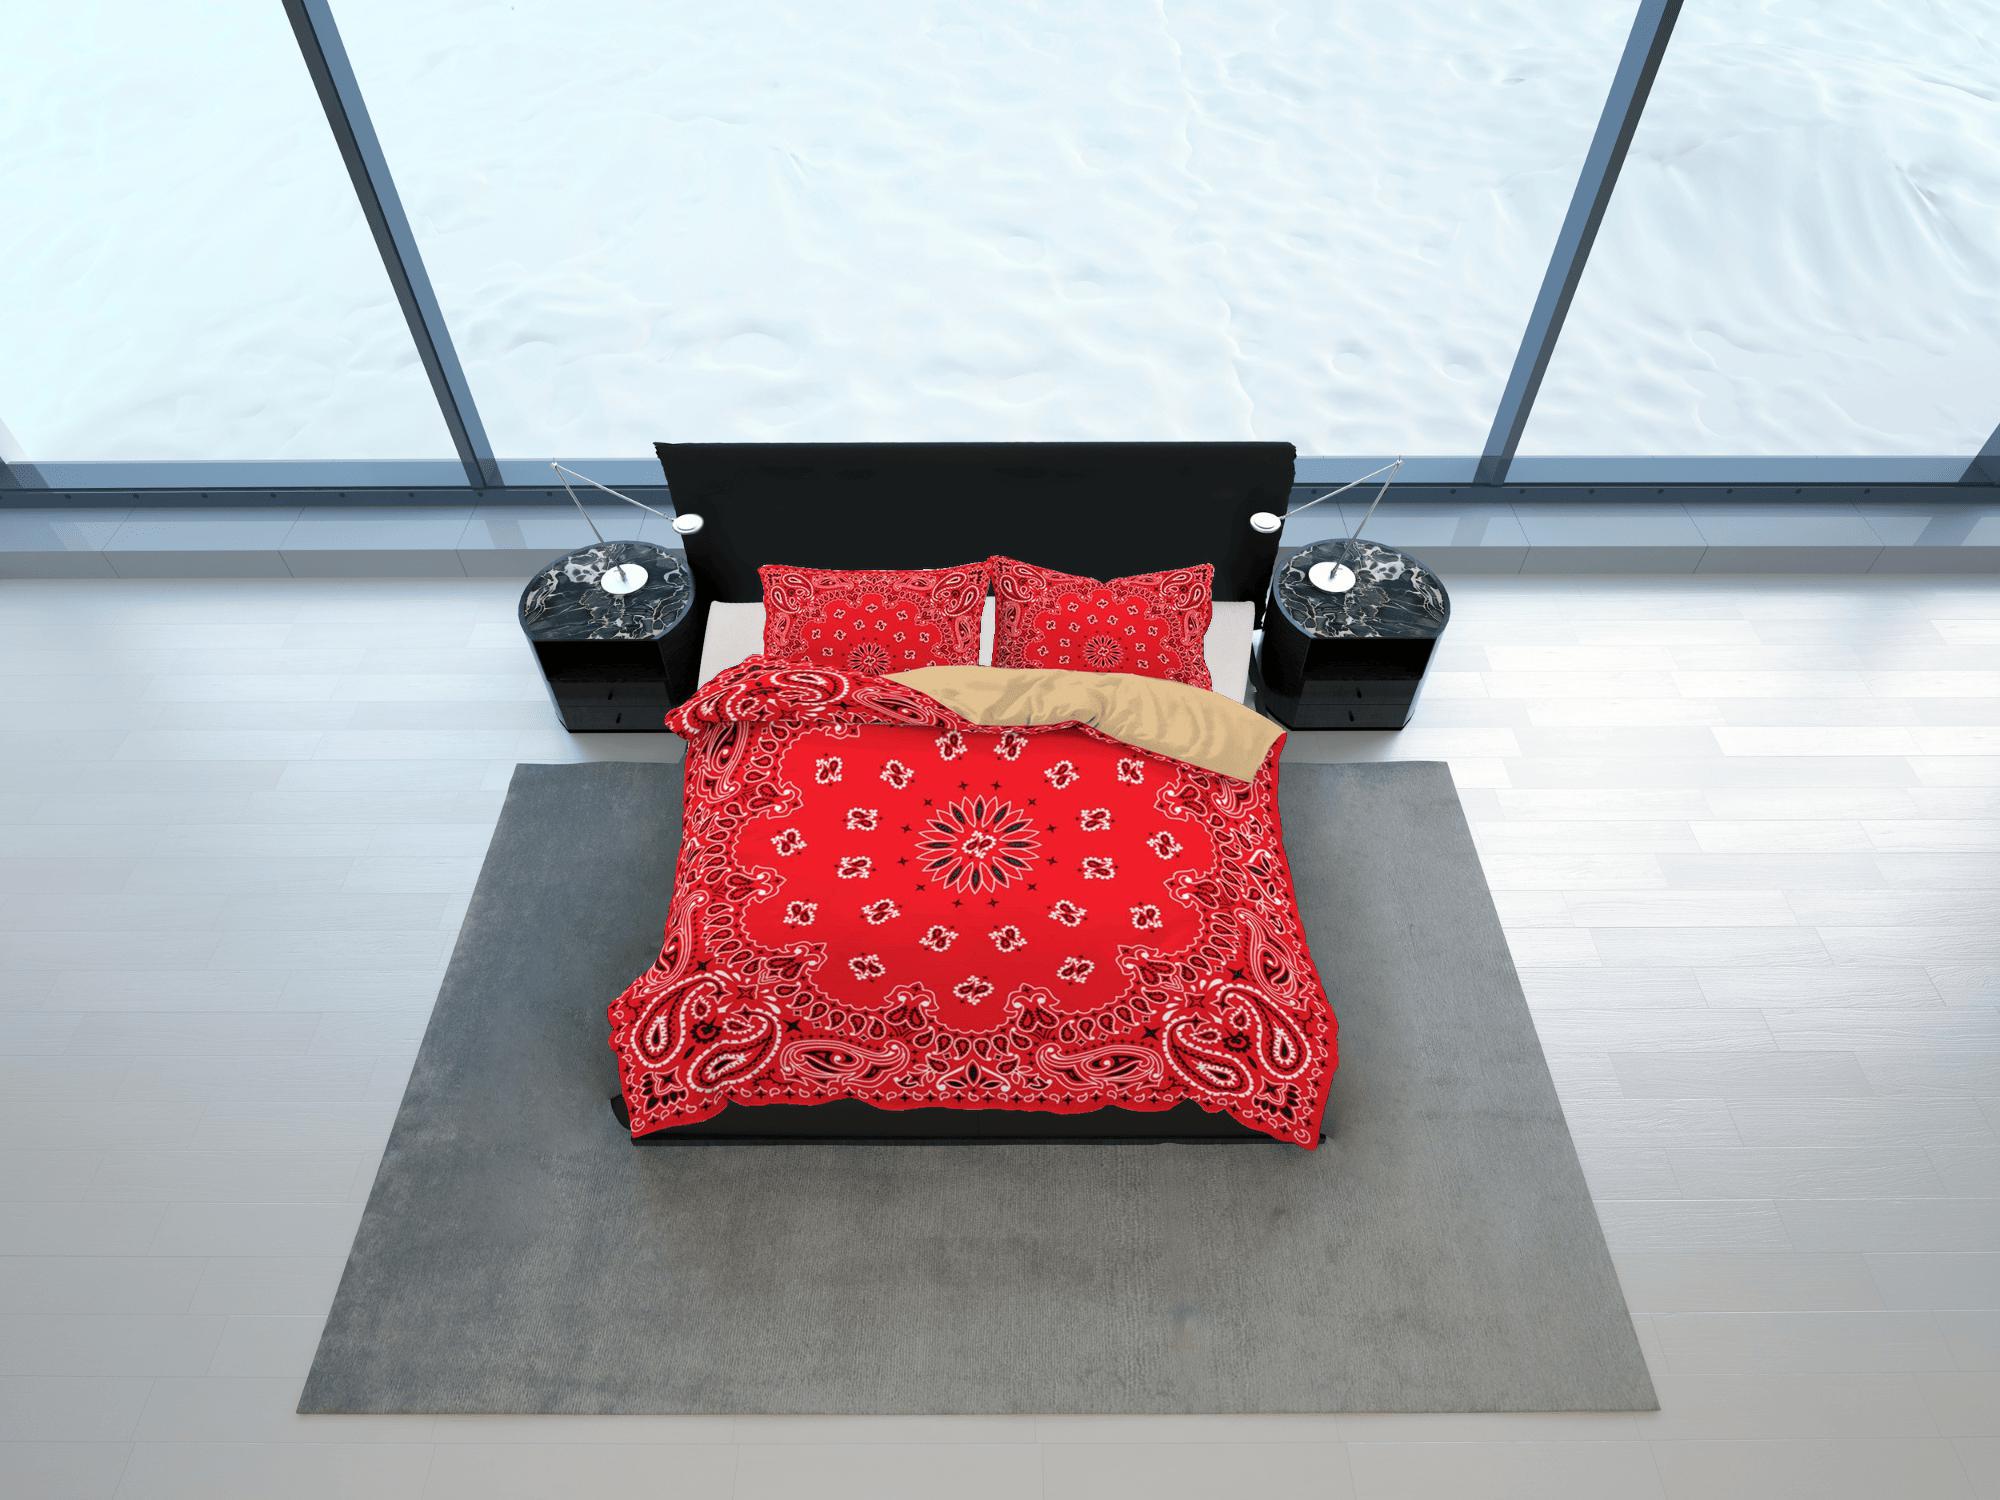 daintyduvet Red Paisley Bandana Inspired Duvet Cover Set Bedspread, Dorm Bedding & Pillowcase